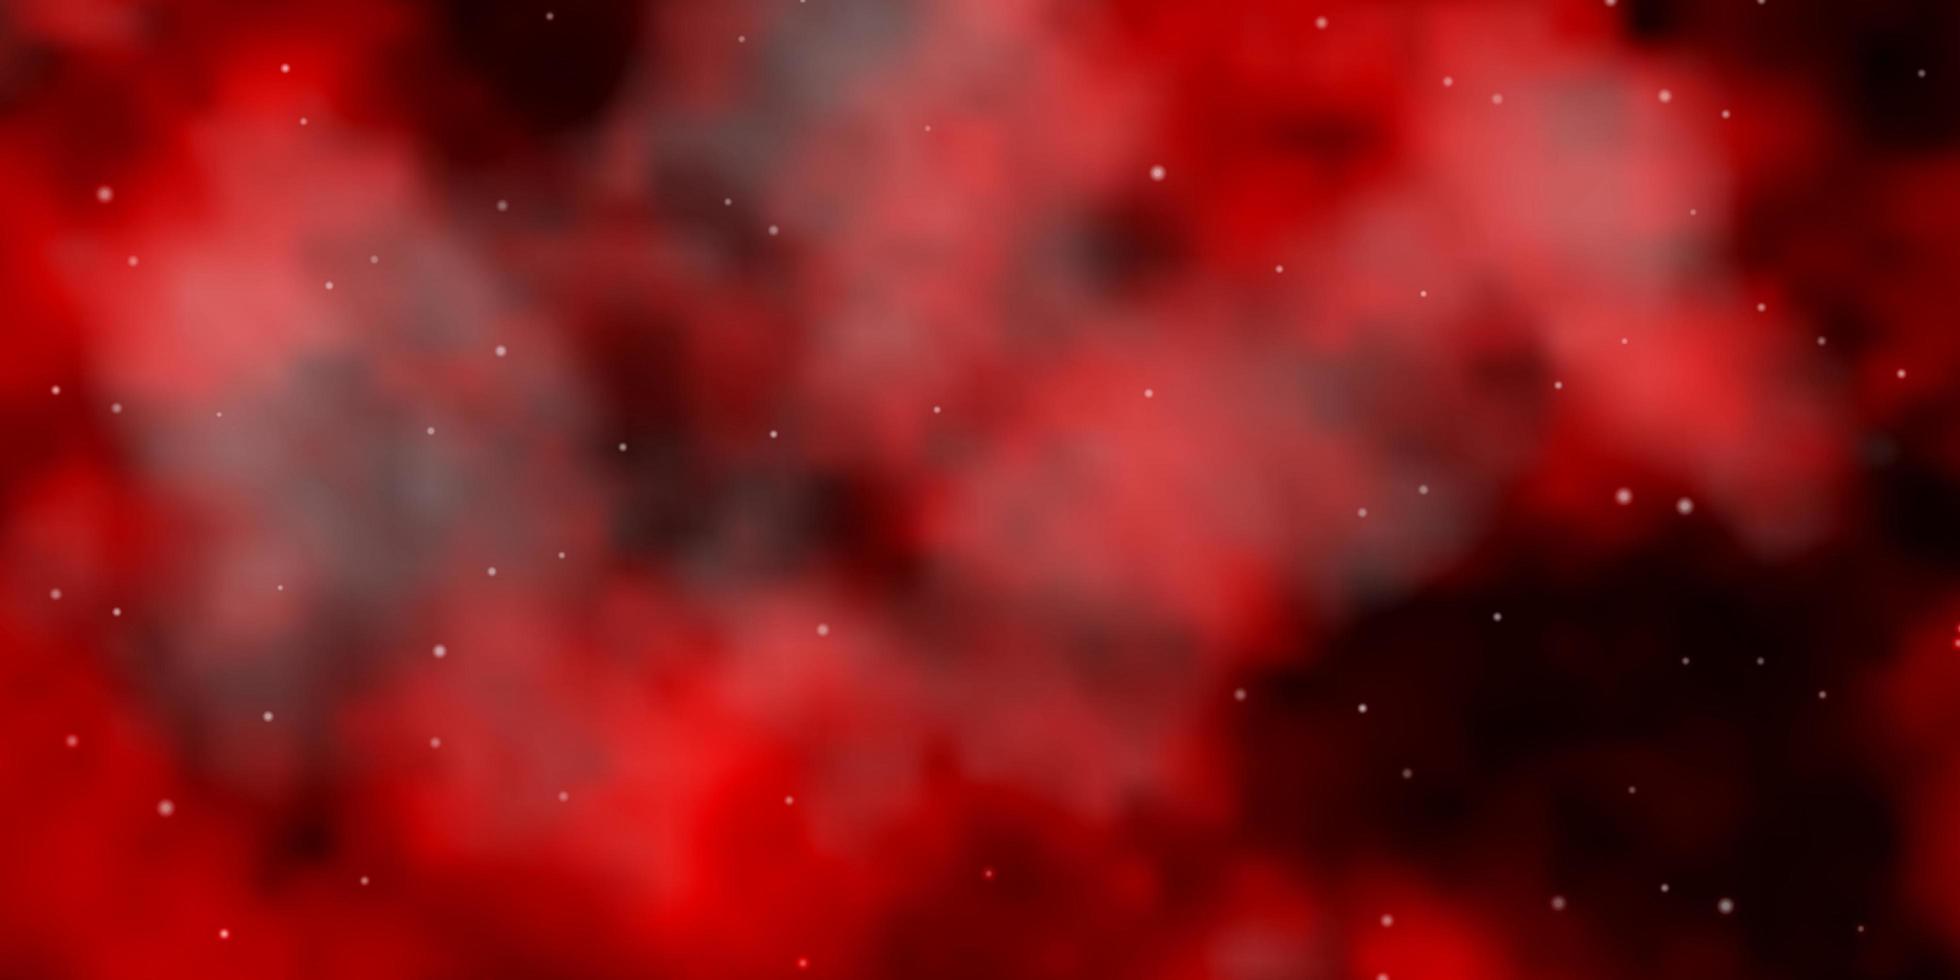 dunkelorange Vektormuster mit abstrakten Sternen. vektor